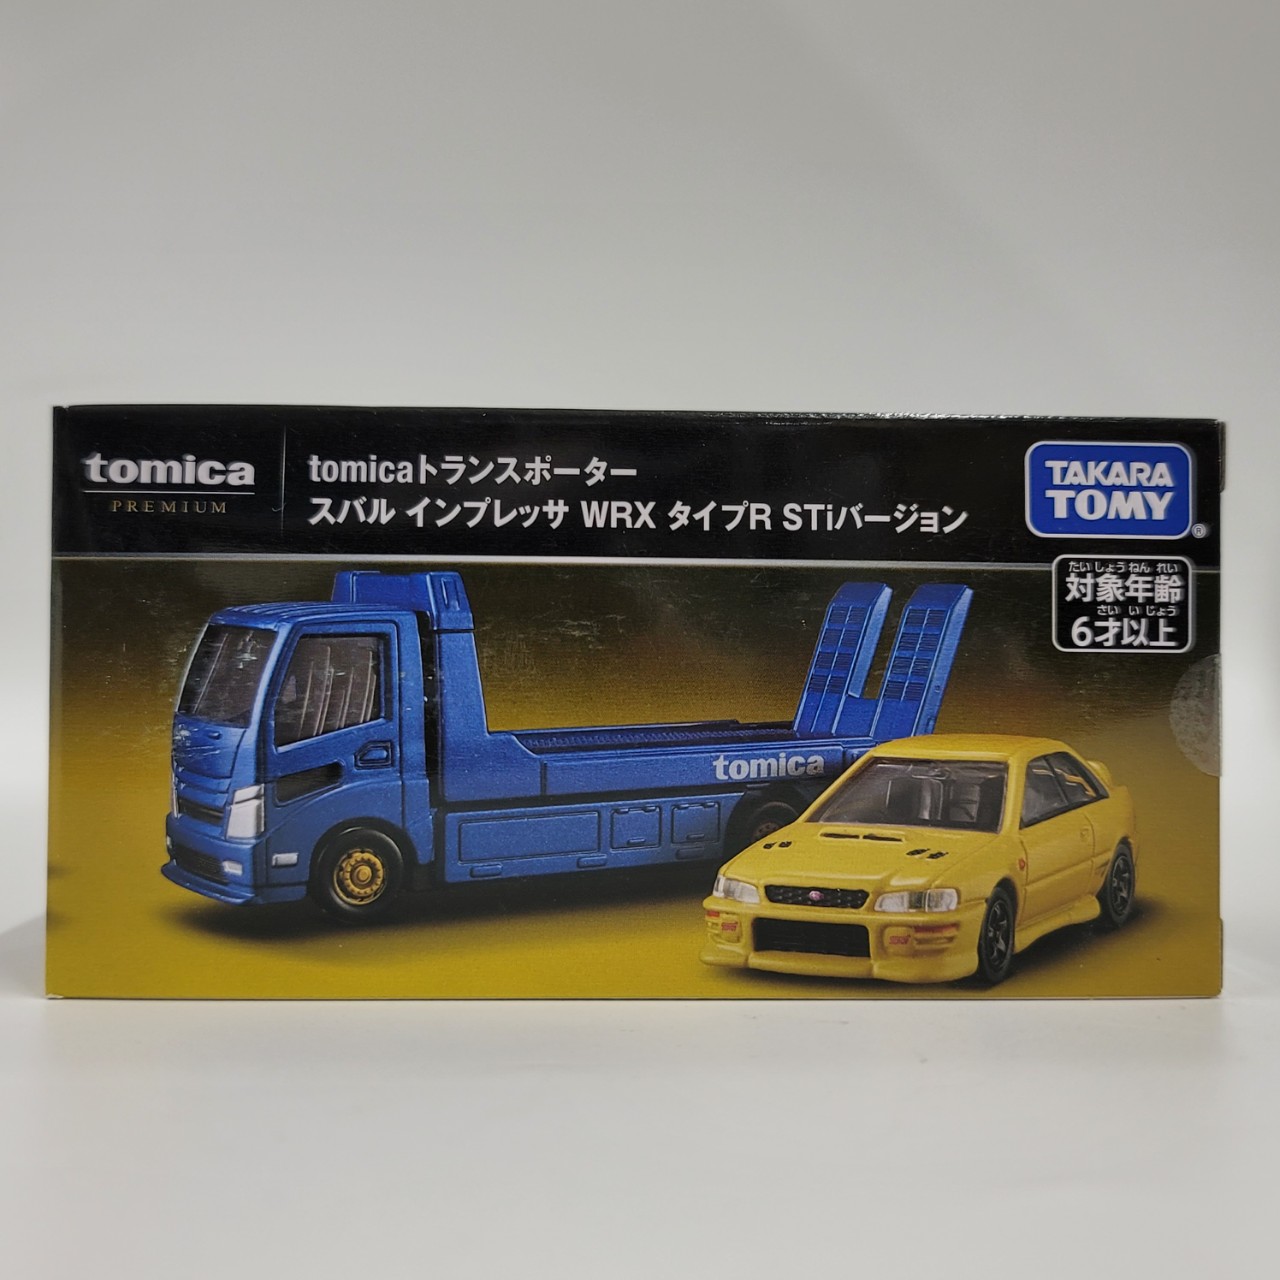 タカラトミー トミカプレミアム tomicaトランスポーター スバル インプレッサ WRX タイプR STiバージョン